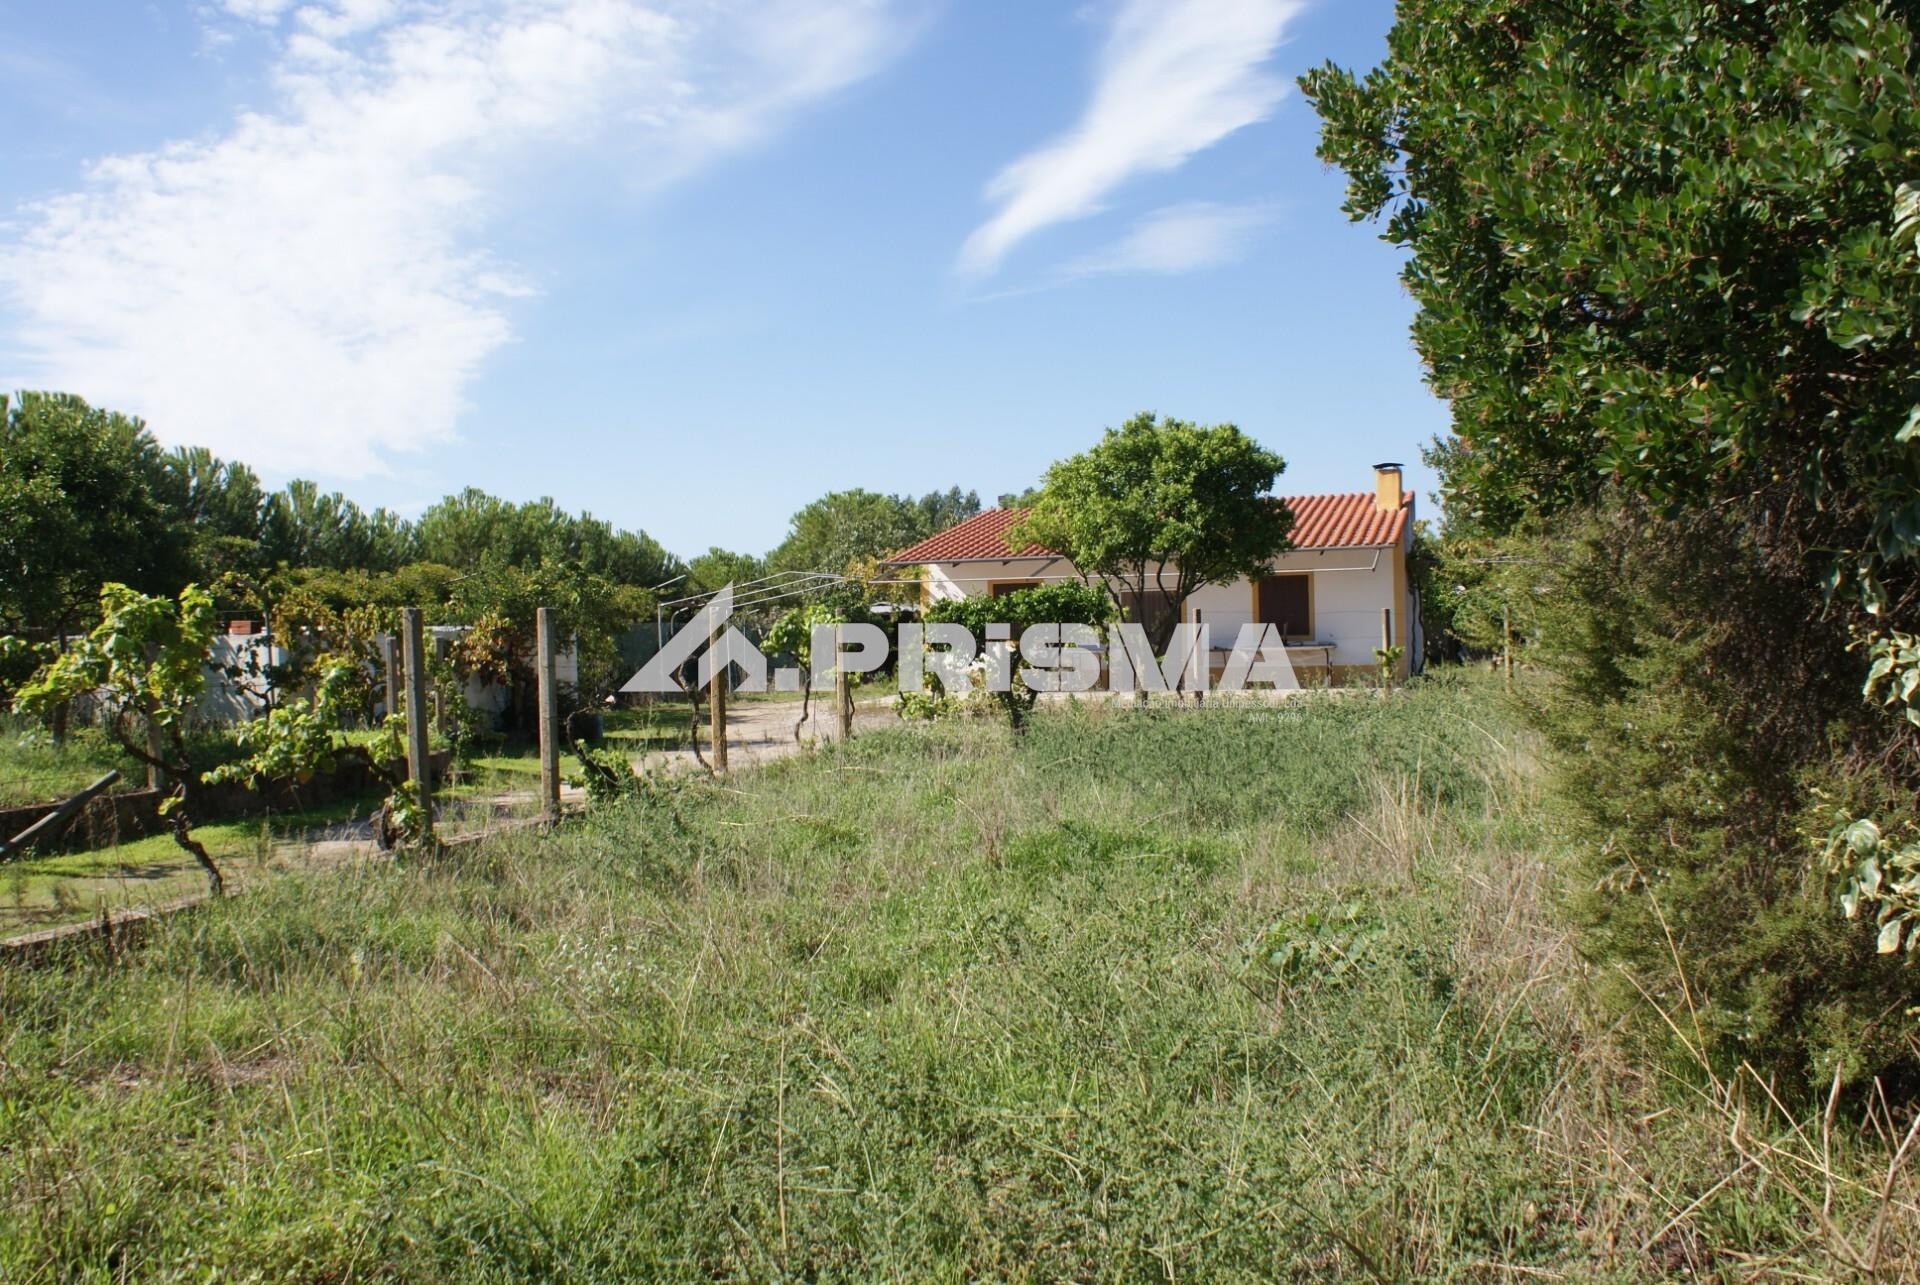 Farm for sale in Castelo Branco